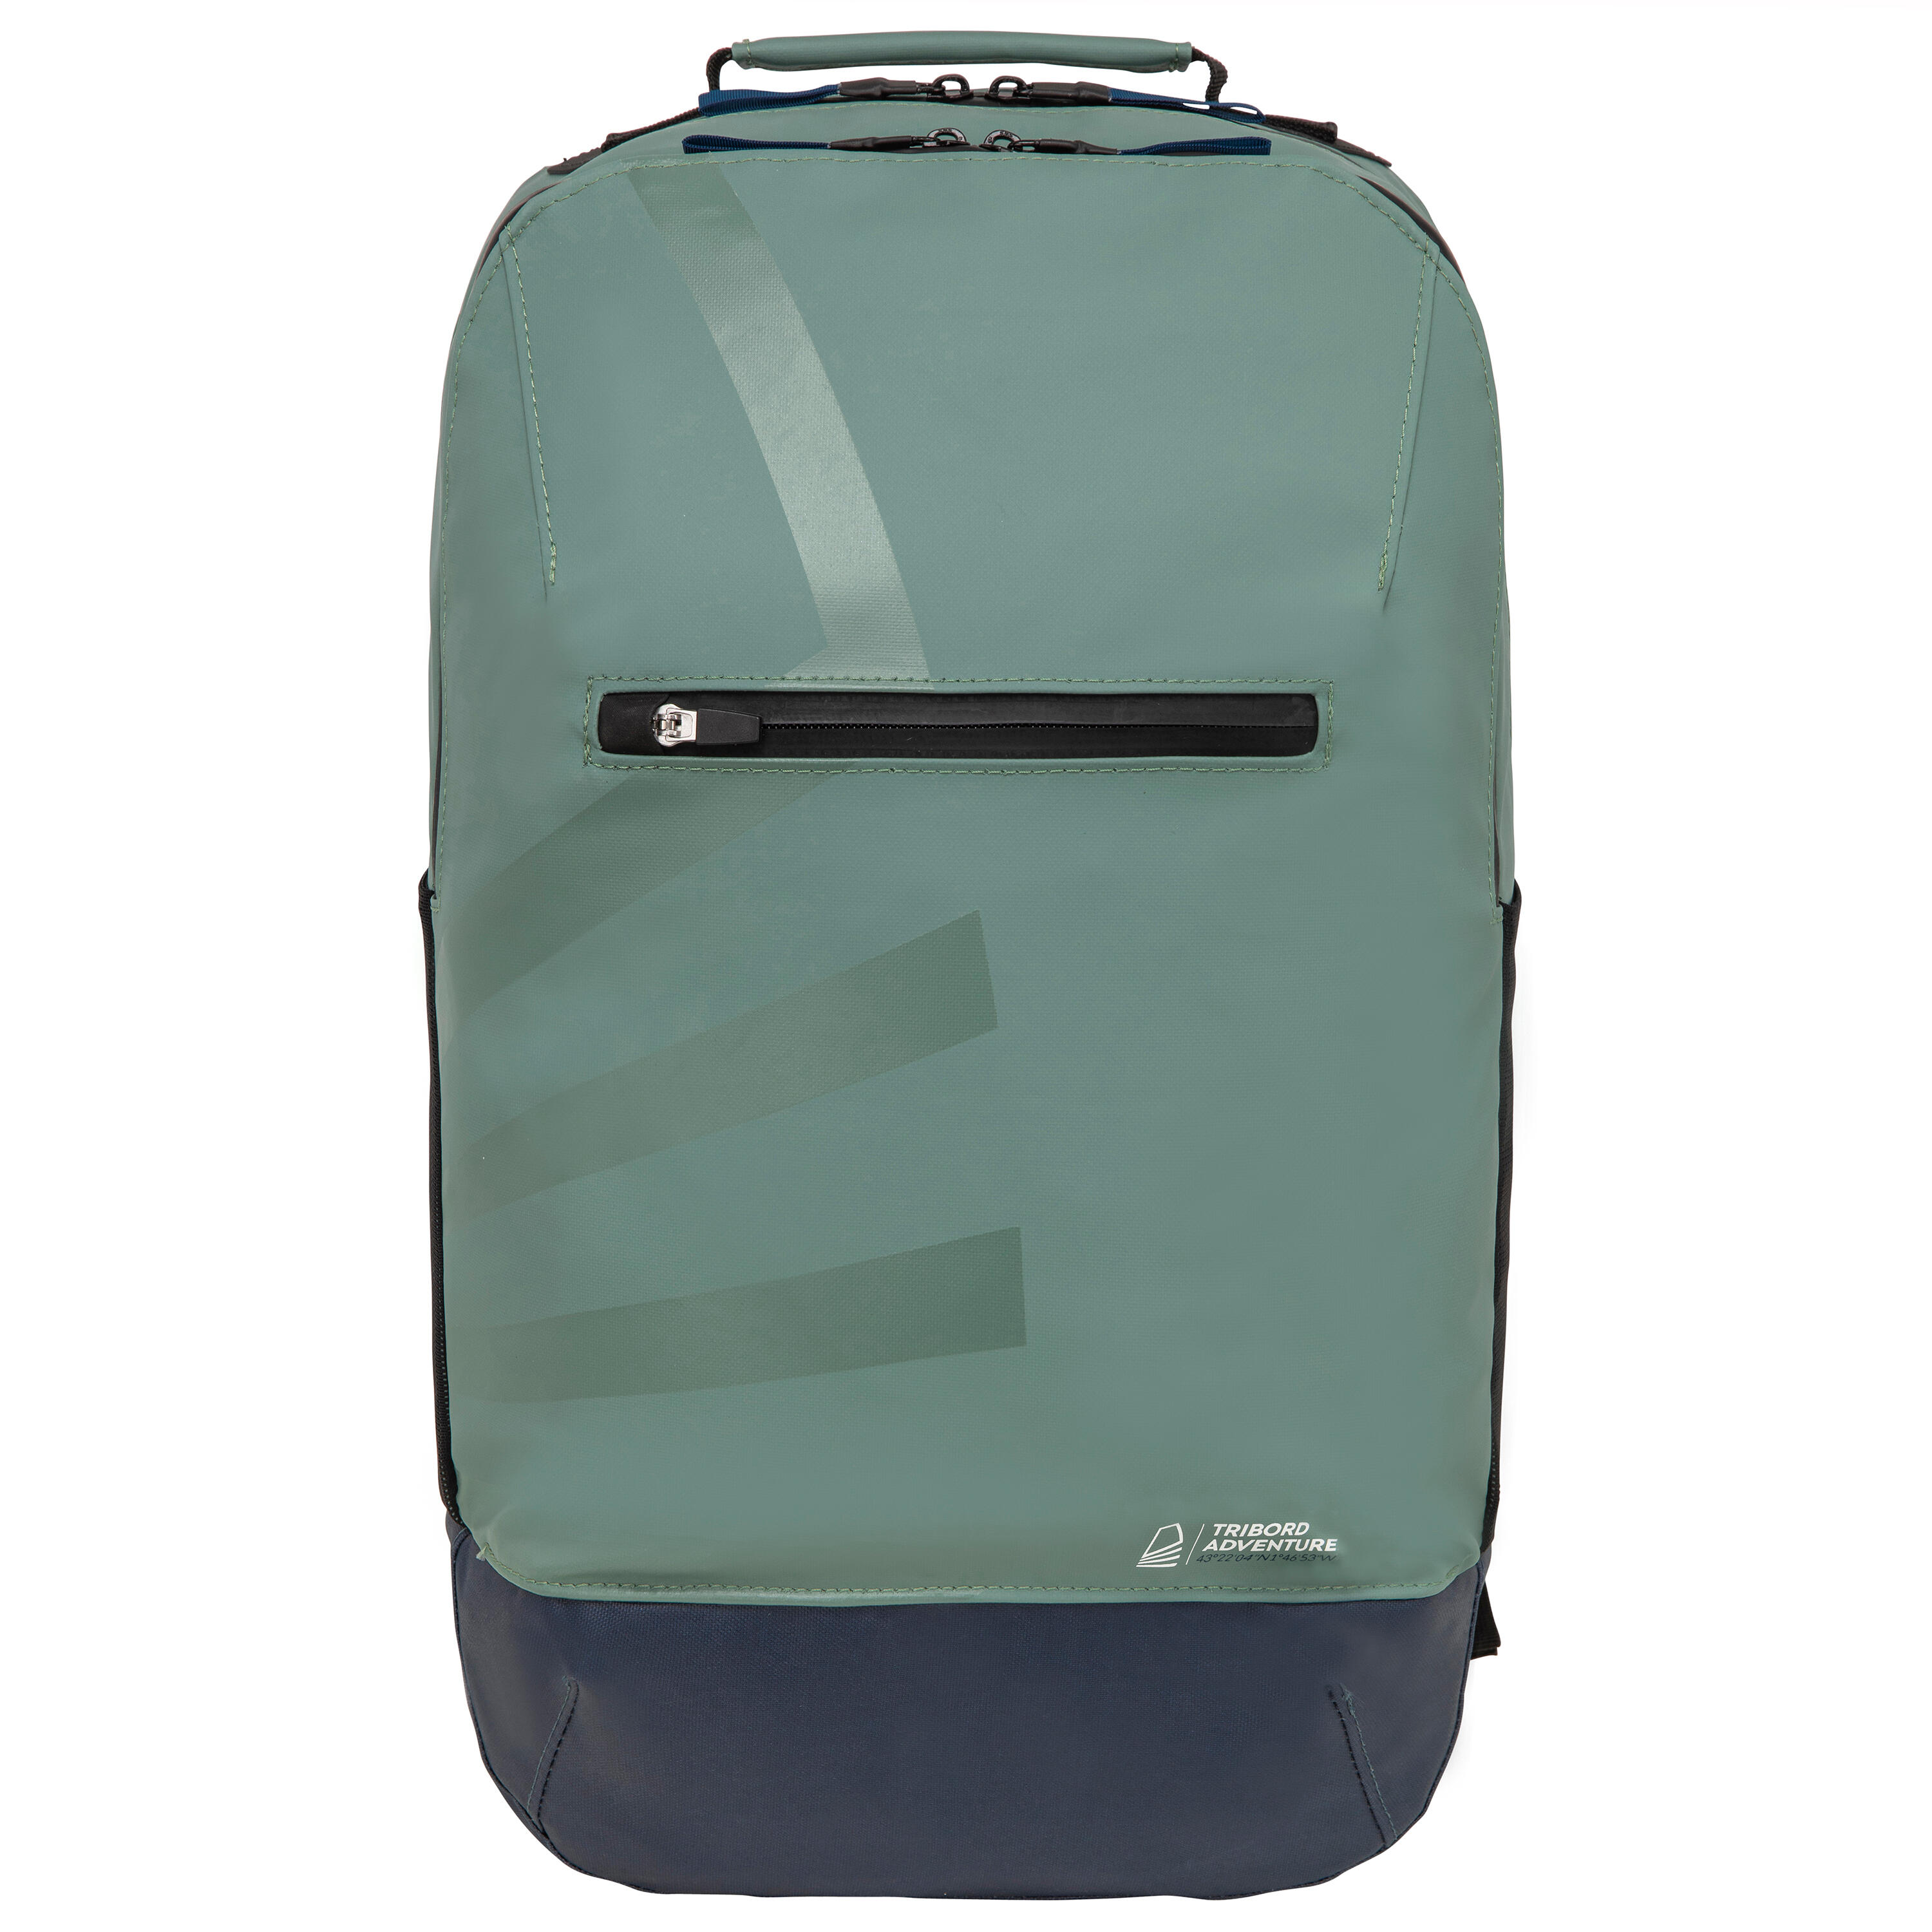 Waterproof backpack 25 litres - Kaki 2/11